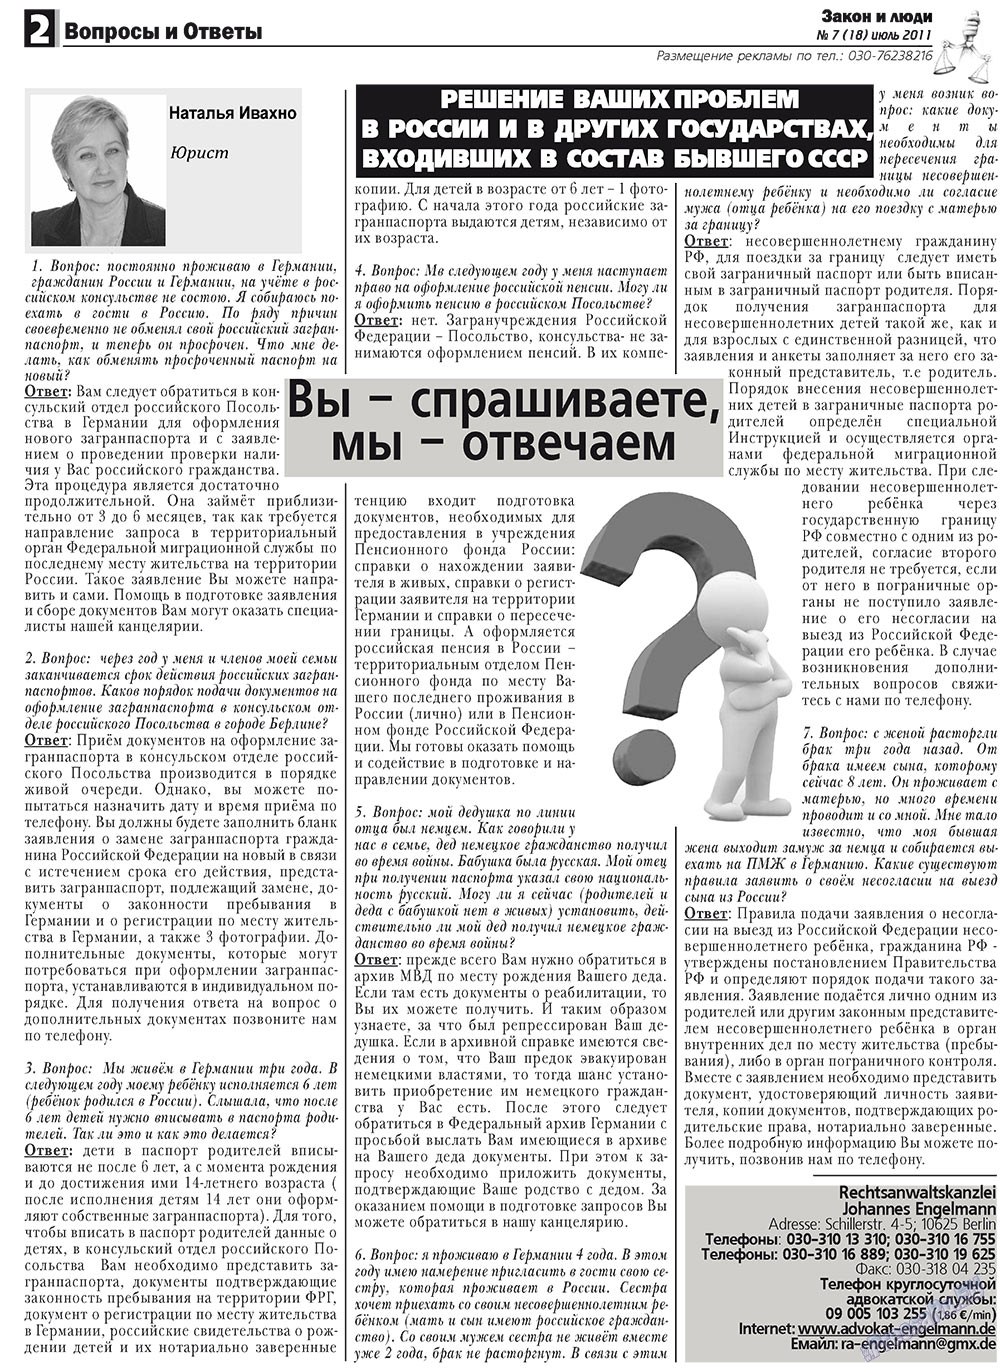 Закон и люди, газета. 2011 №7 стр.2